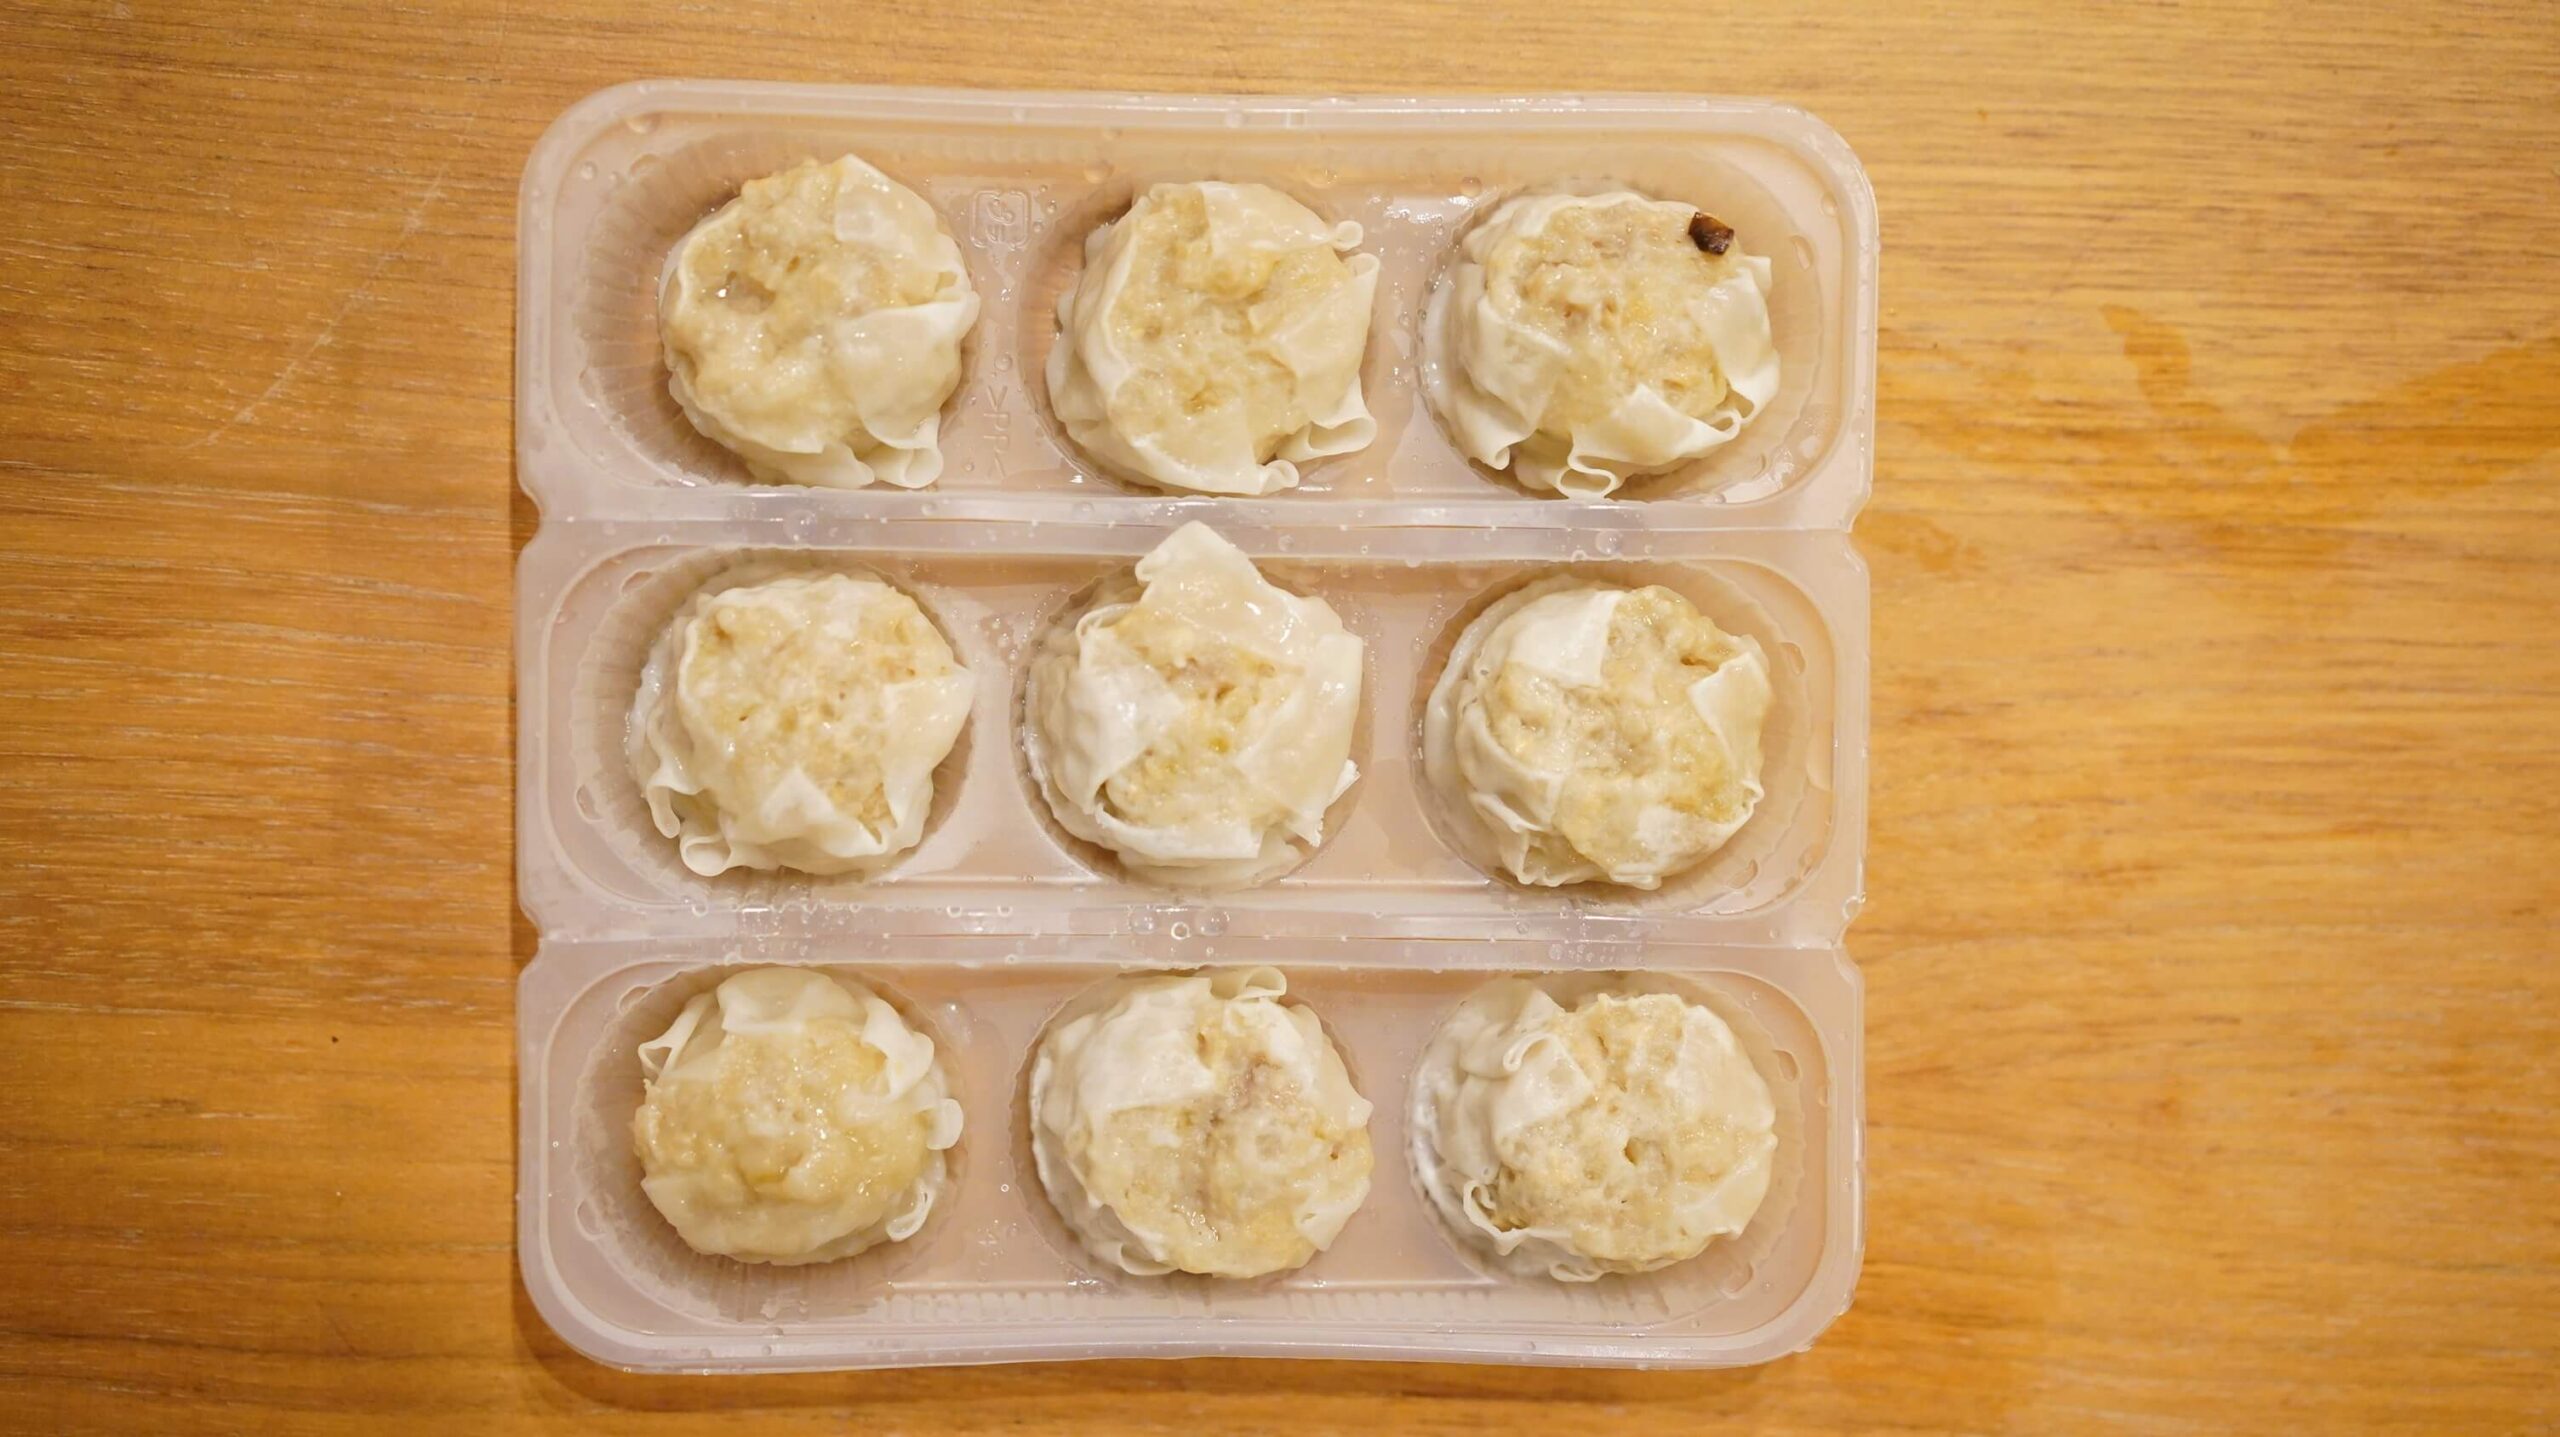 イオン・トップバリュ（TopValu）の「シューマイ」の冷凍食品を上から撮影した写真